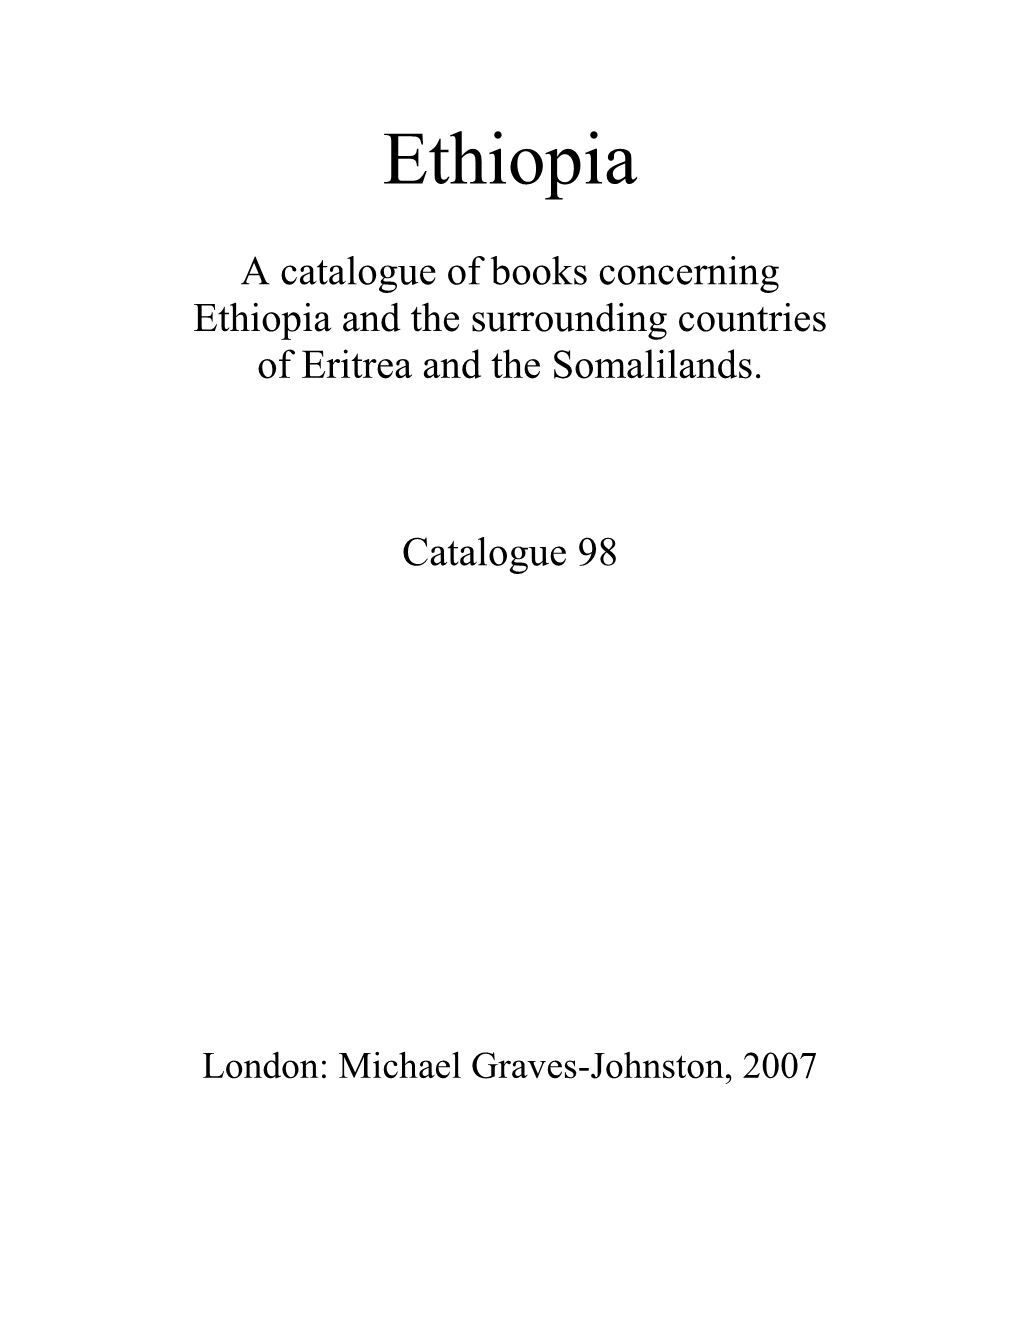 Catalogue 98 Ethiopia